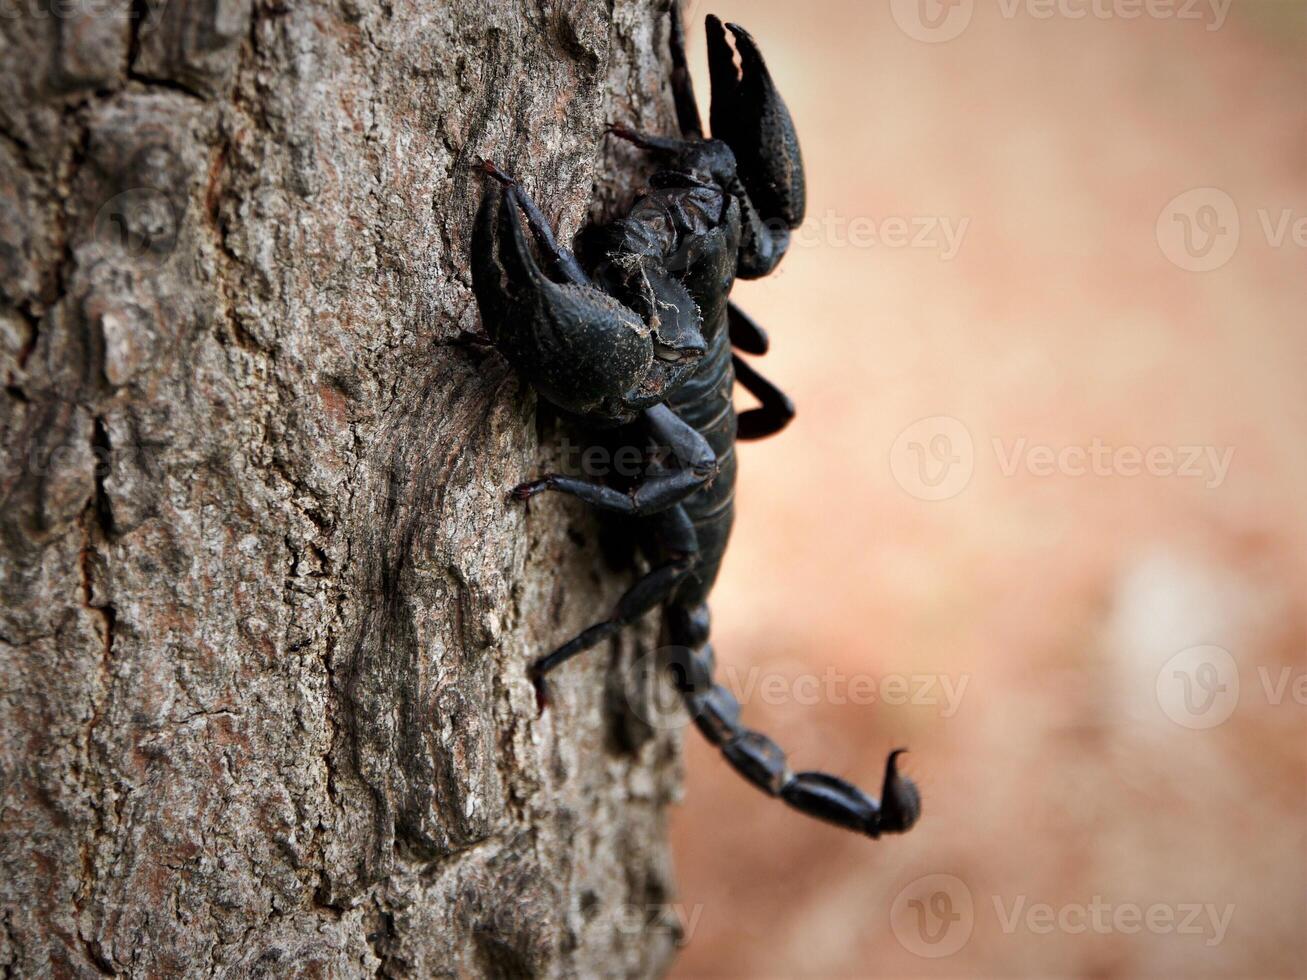 scorpione su un' albero tronco foto